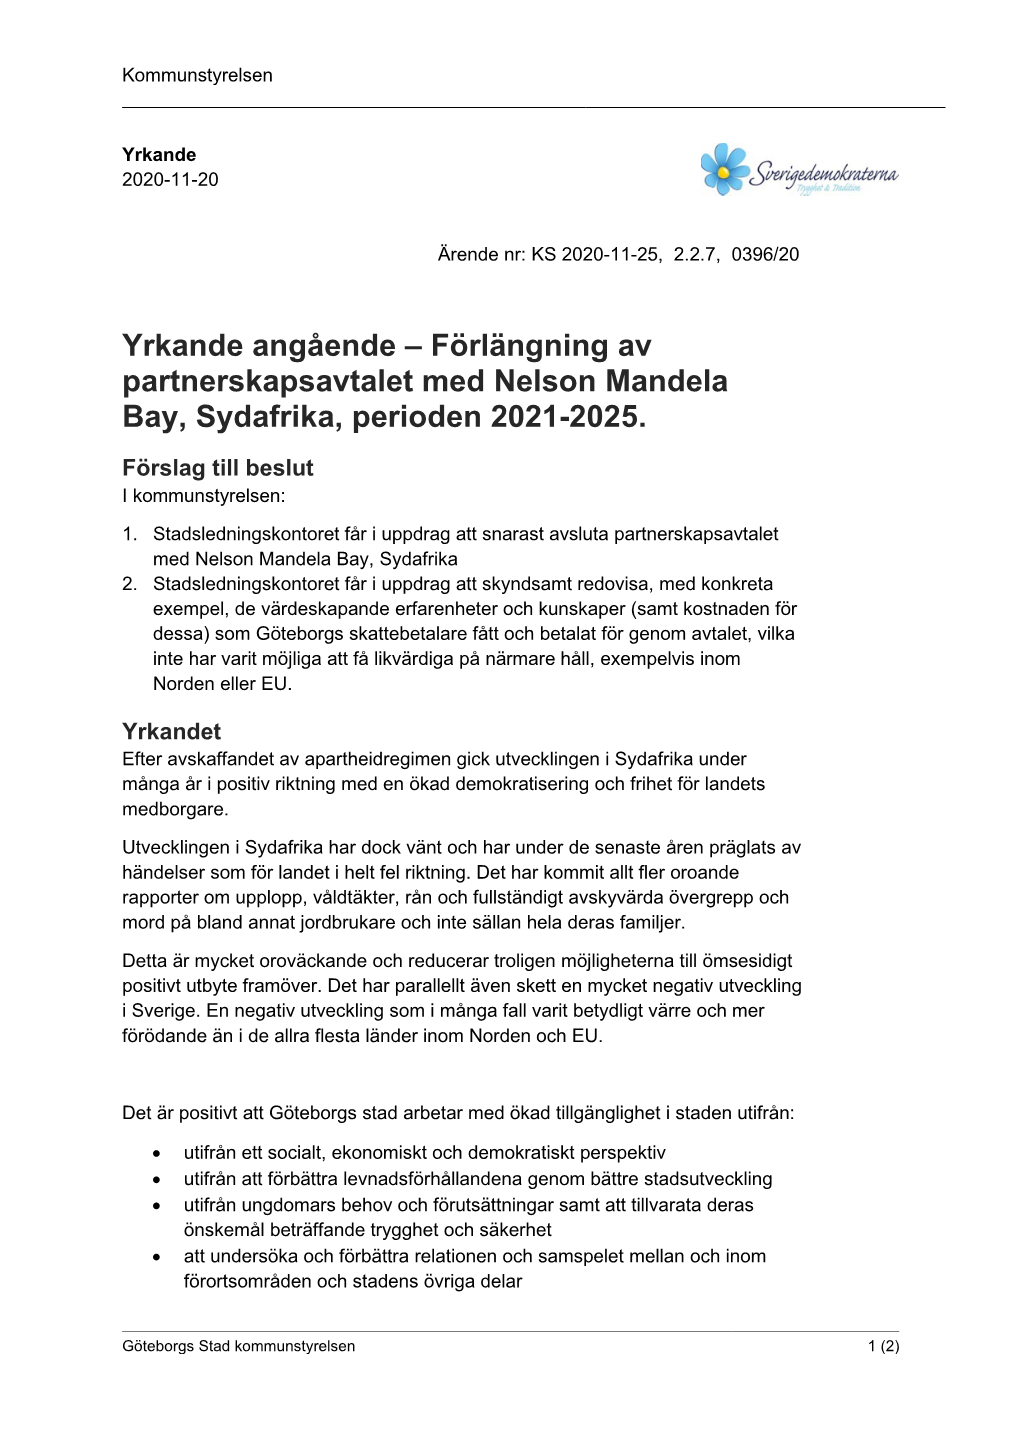 Yrkande Angående – Förlängning Av Partnerskapsavtalet Med Nelson Mandela Bay, Sydafrika, Perioden 2021-2025